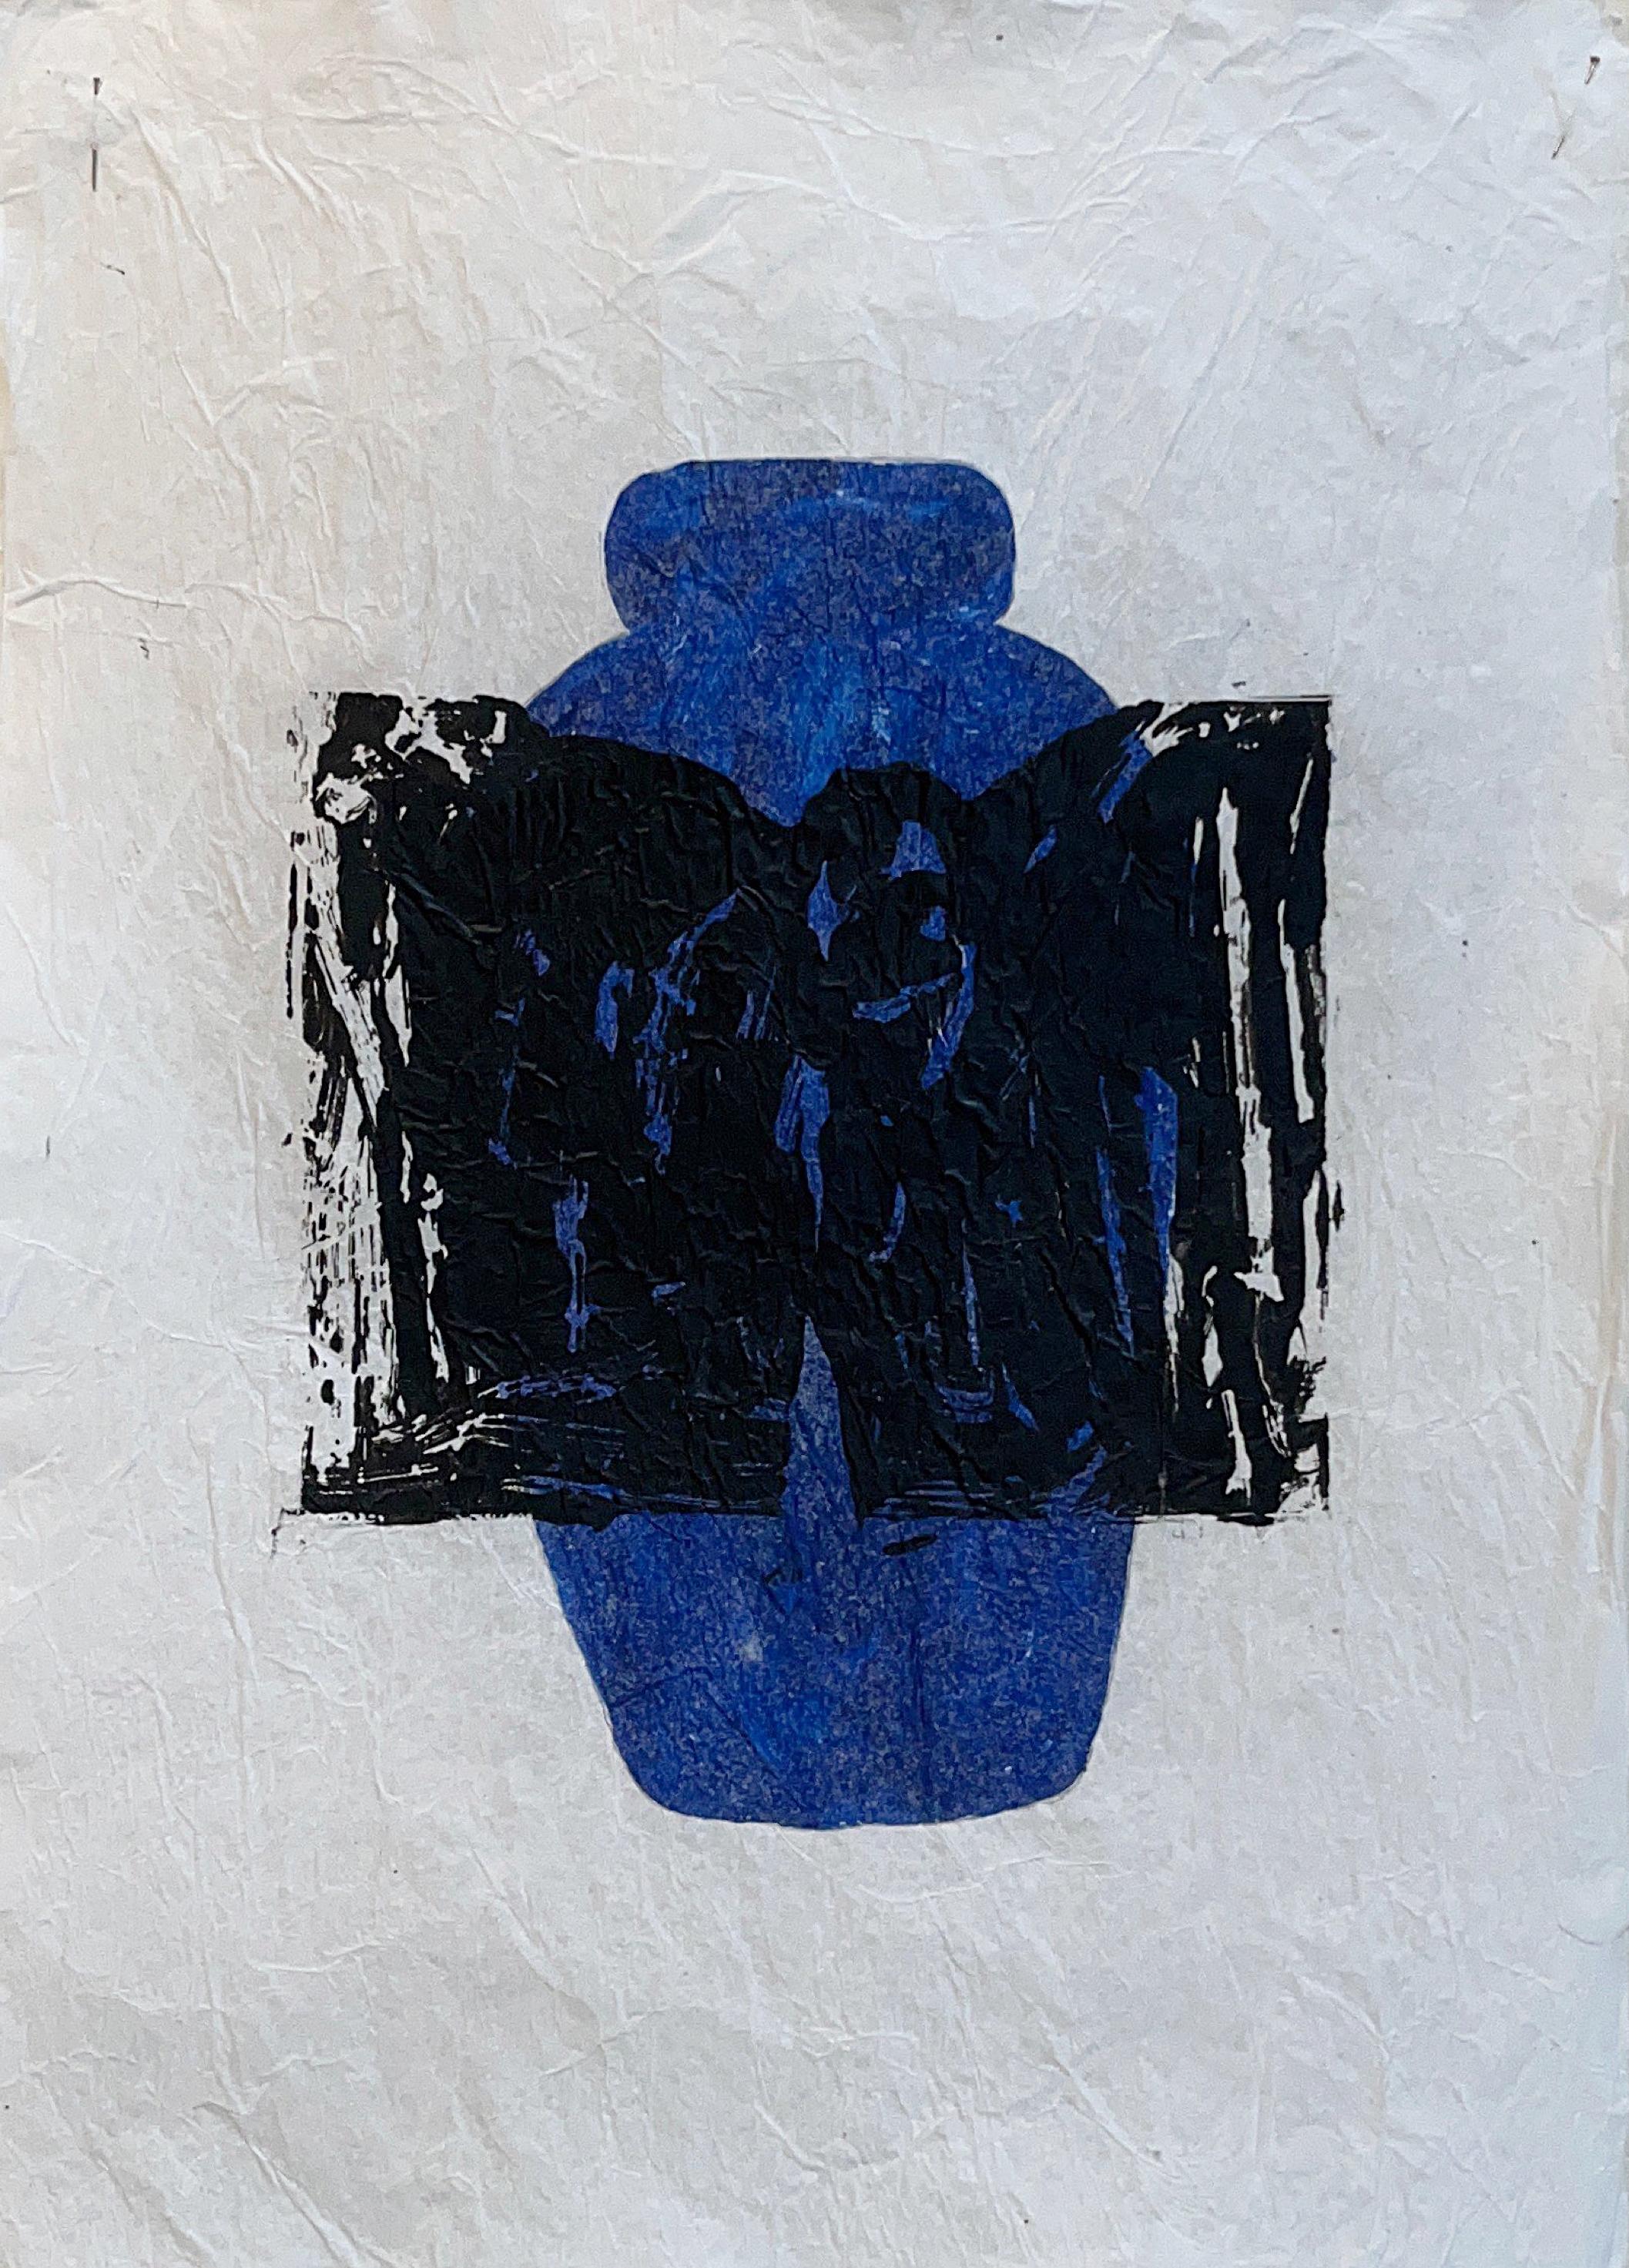 „365 Urnen“, Mischtechnik auf weißem Seidenpapier, Post – Minimalistisch, 50 x 33 cm (Post-Minimalismus), Mixed Media Art, von Peter Kramer